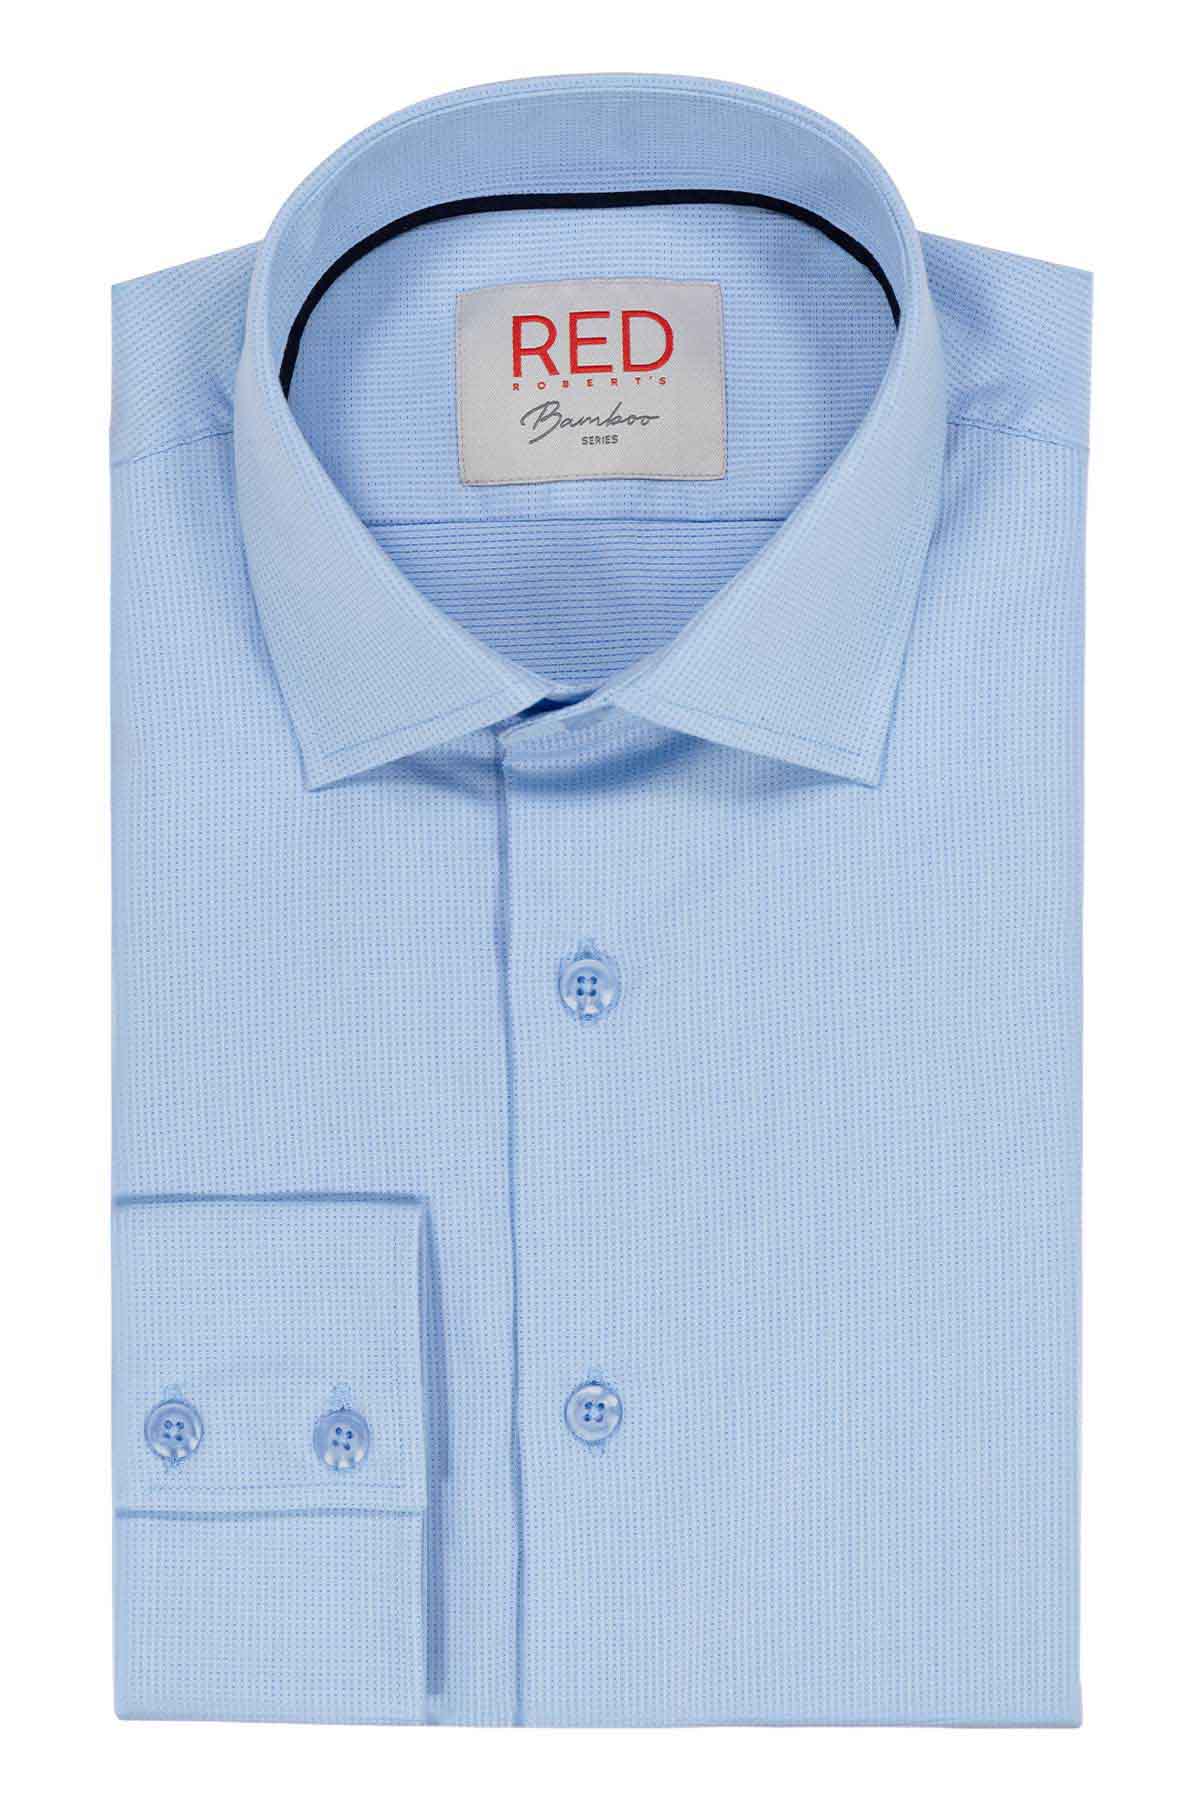 Camisa Vestir BAMBOO Roberts Red Gris Slim Fit